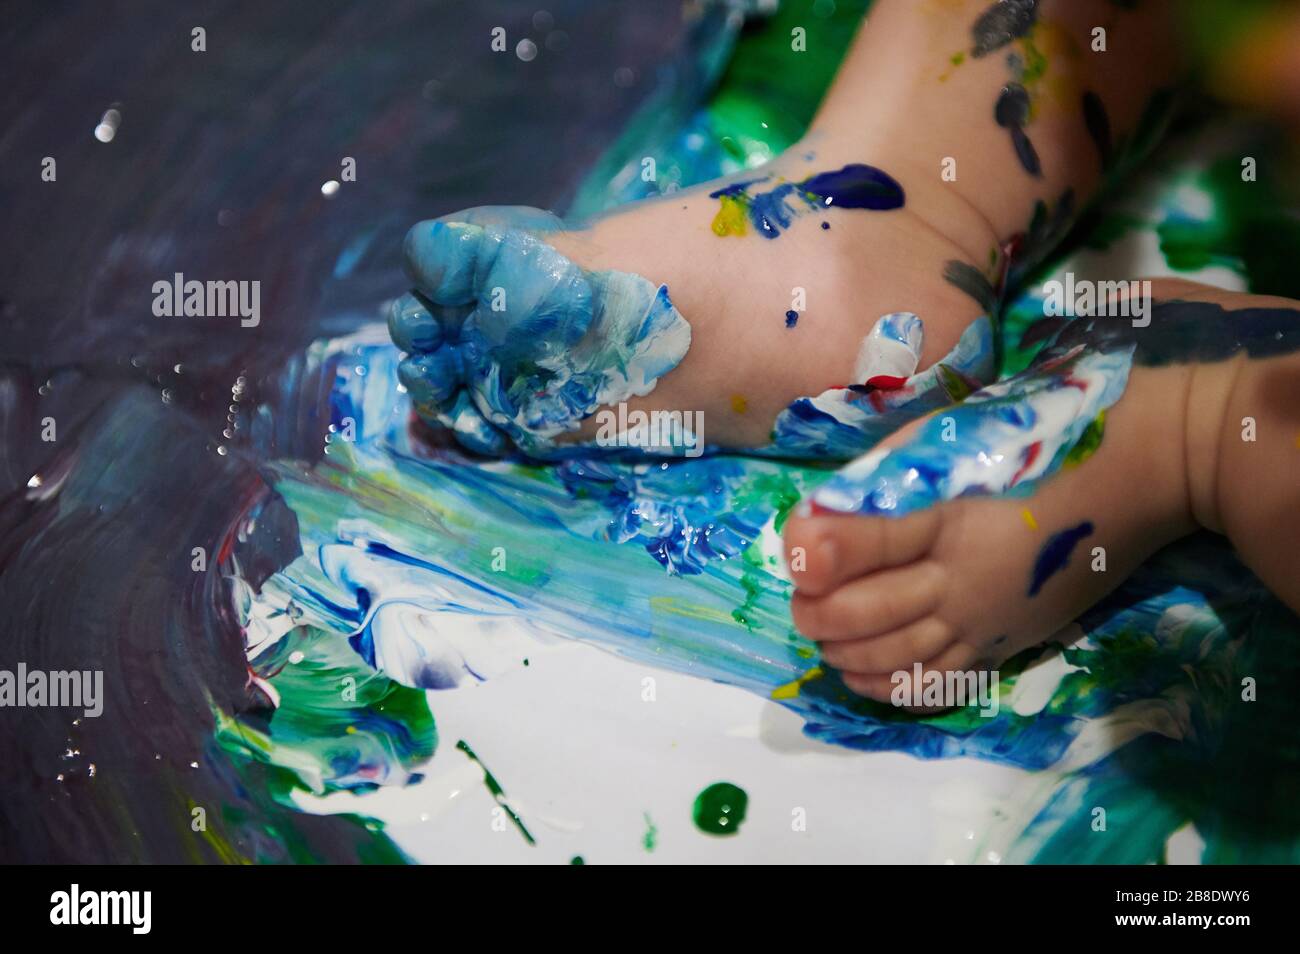 Petit pied de bébé sale de peinture humide vue rapprochée Banque D'Images